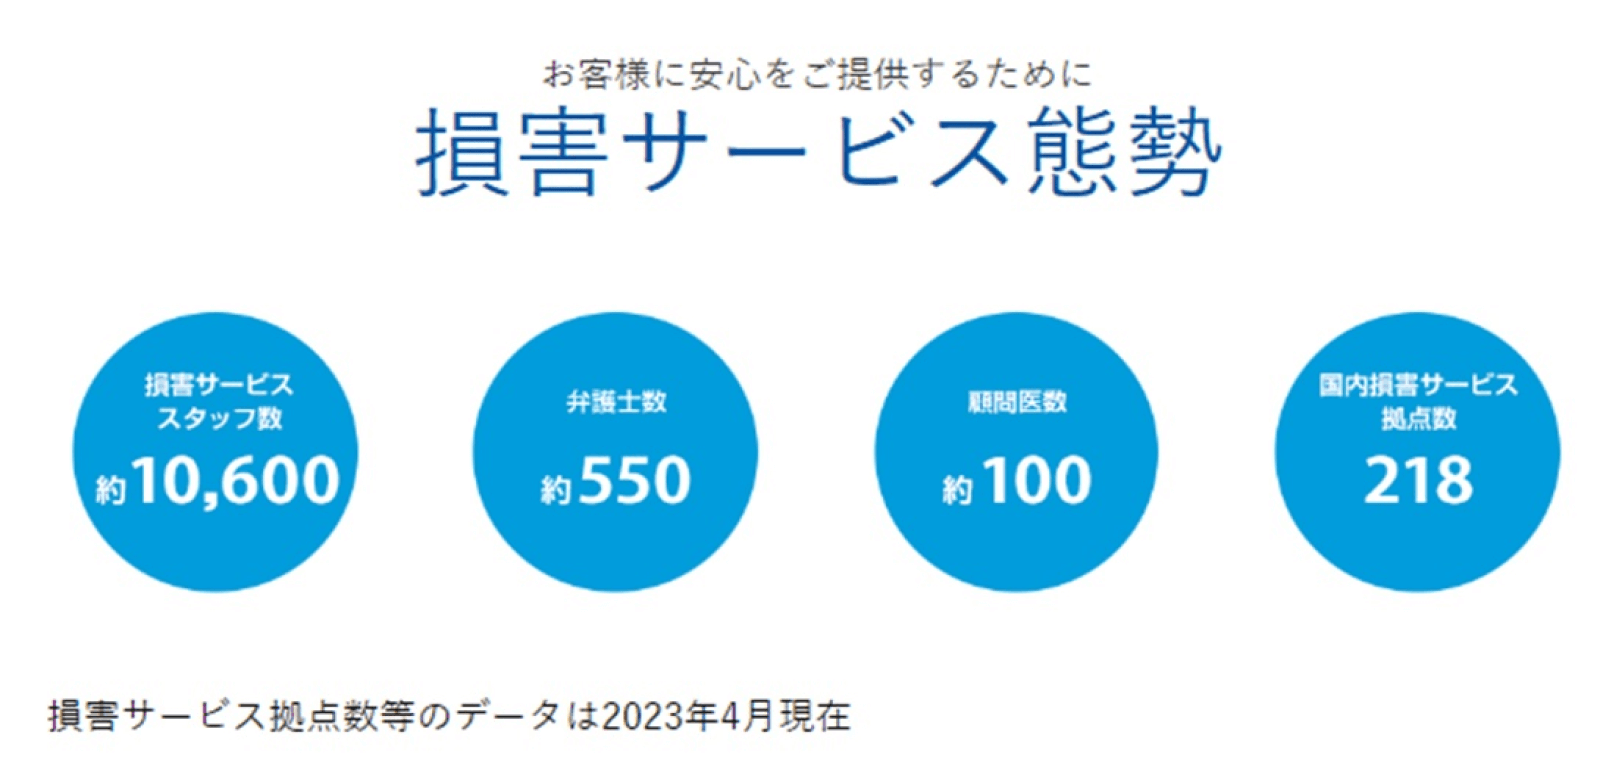 引受保険会社 東京海上⽇動の事故対応体制・実績・満⾜度